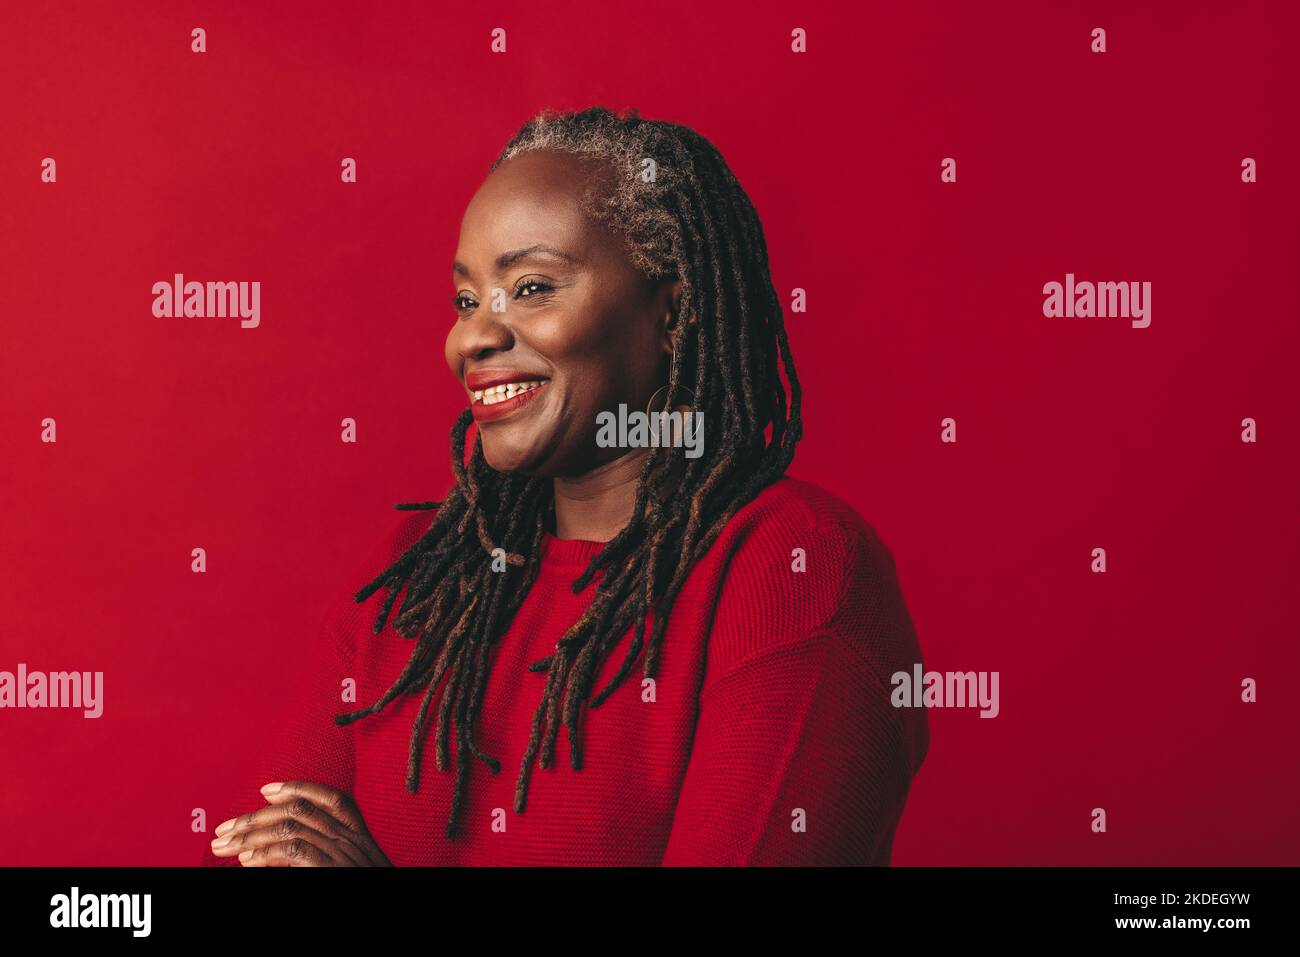 Mujer negra alegre sonriendo y mirando lejos mientras que está parado contra un fondo rojo. Feliz mujer madura abrazando su cabello natural con confianza. Foto de stock